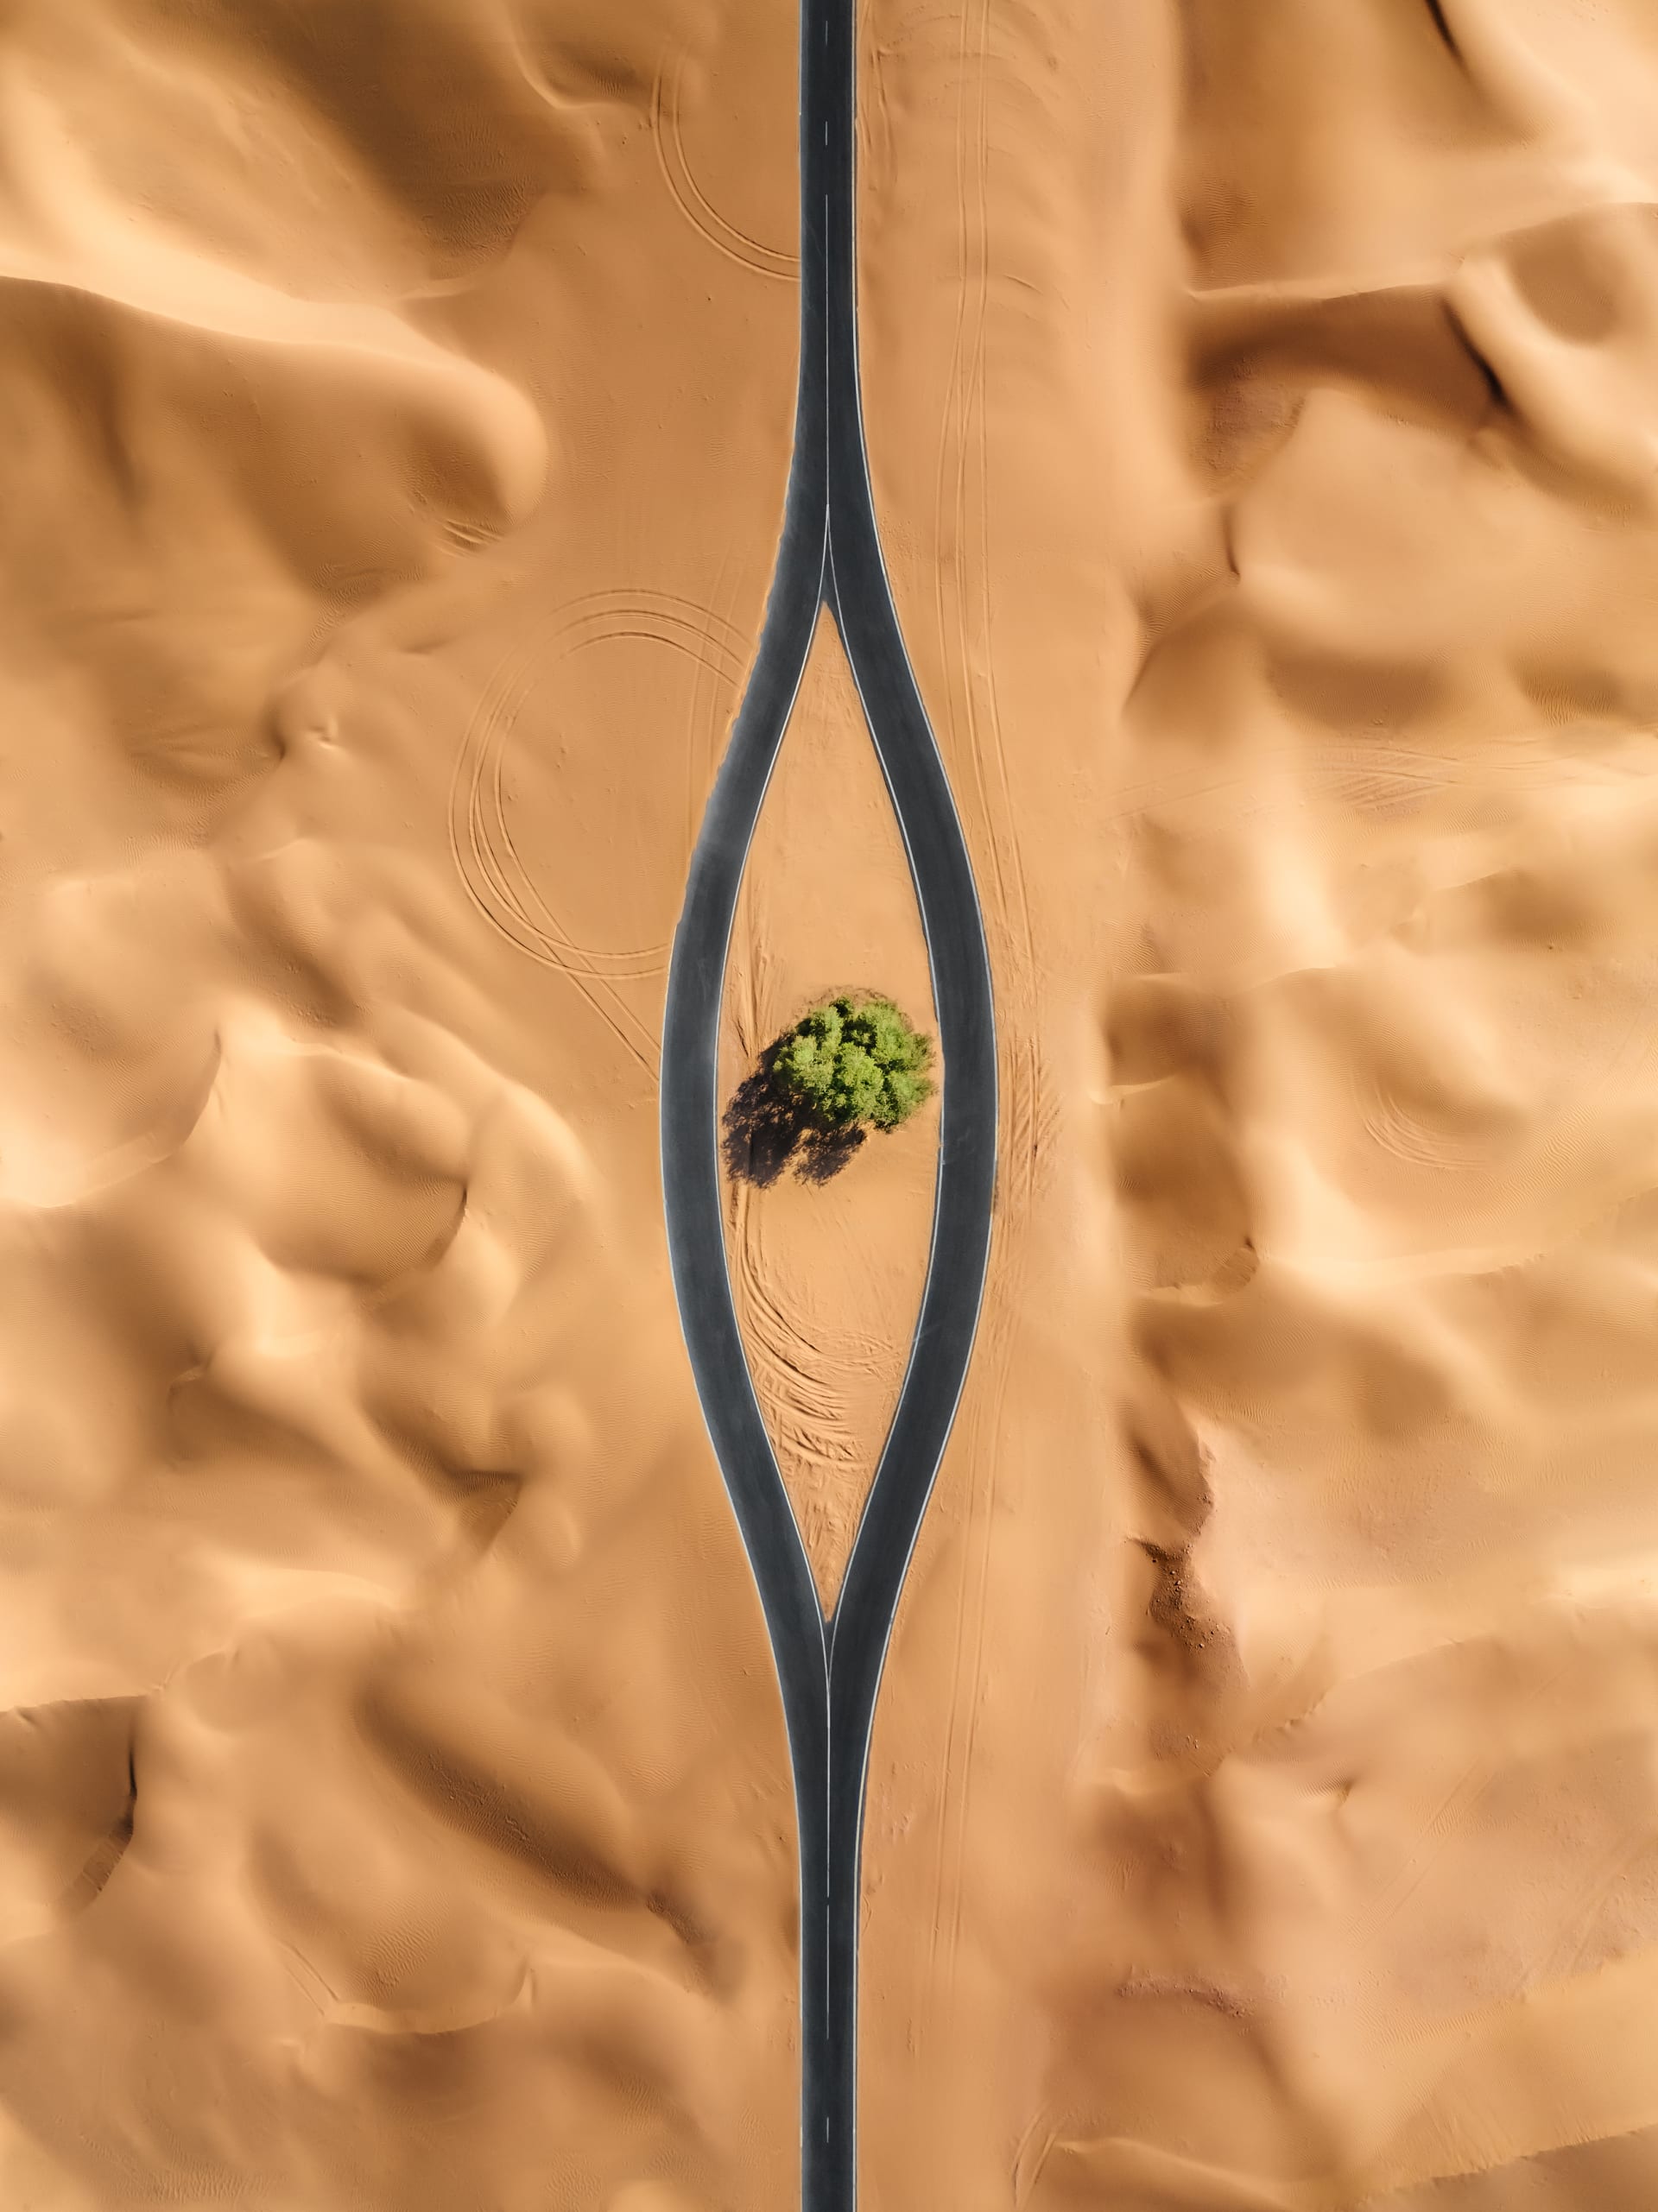 من زاوية فريدة.. مصور يوثق ملعب كرة سلة ابتلعه الرمال في الإمارات